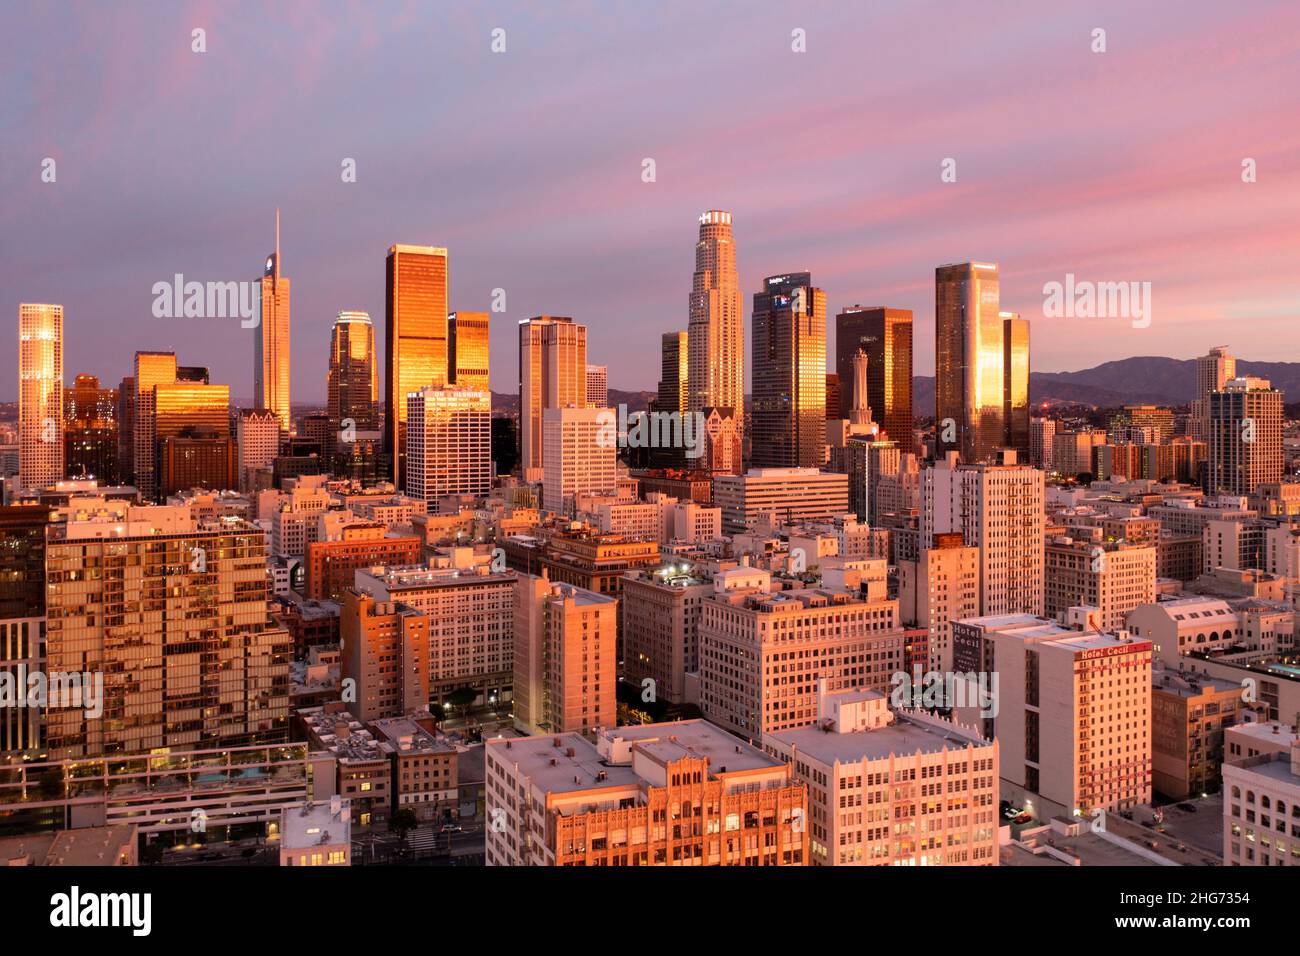 Vista aérea de un increíble amanecer rosa y dorado reflejado en las torres del centro de Los Ángeles Foto de stock